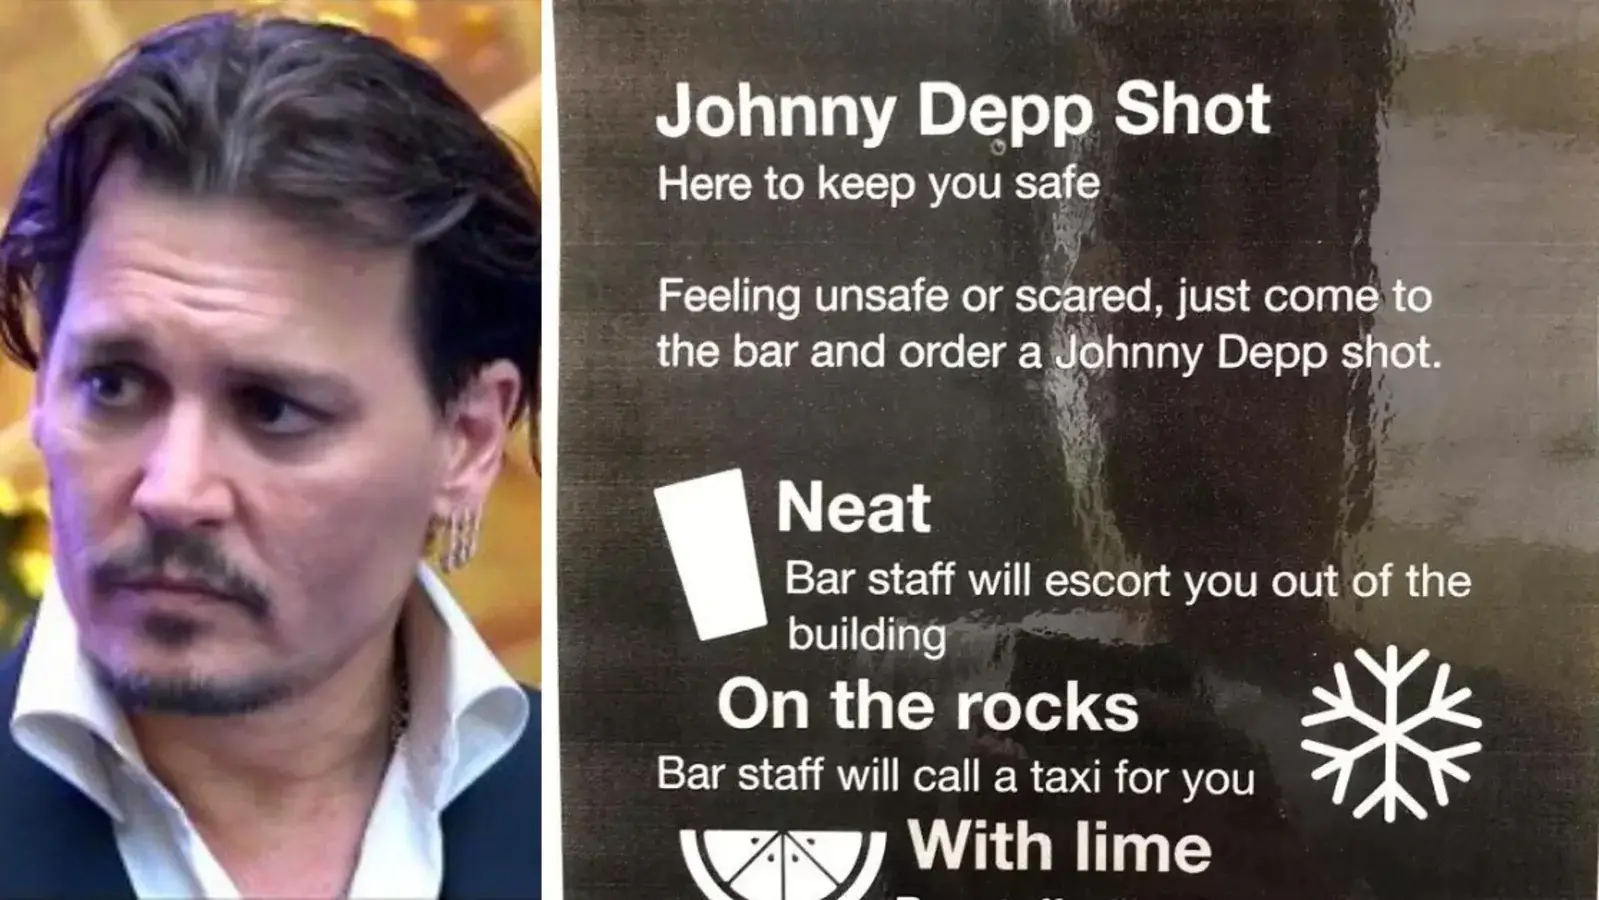 'असुरक्षित या डरा हुआ' महसूस करने वाले पुरुष ग्राहकों के लिए बार ने 'जॉनी डेप शॉट्स' बेचे
